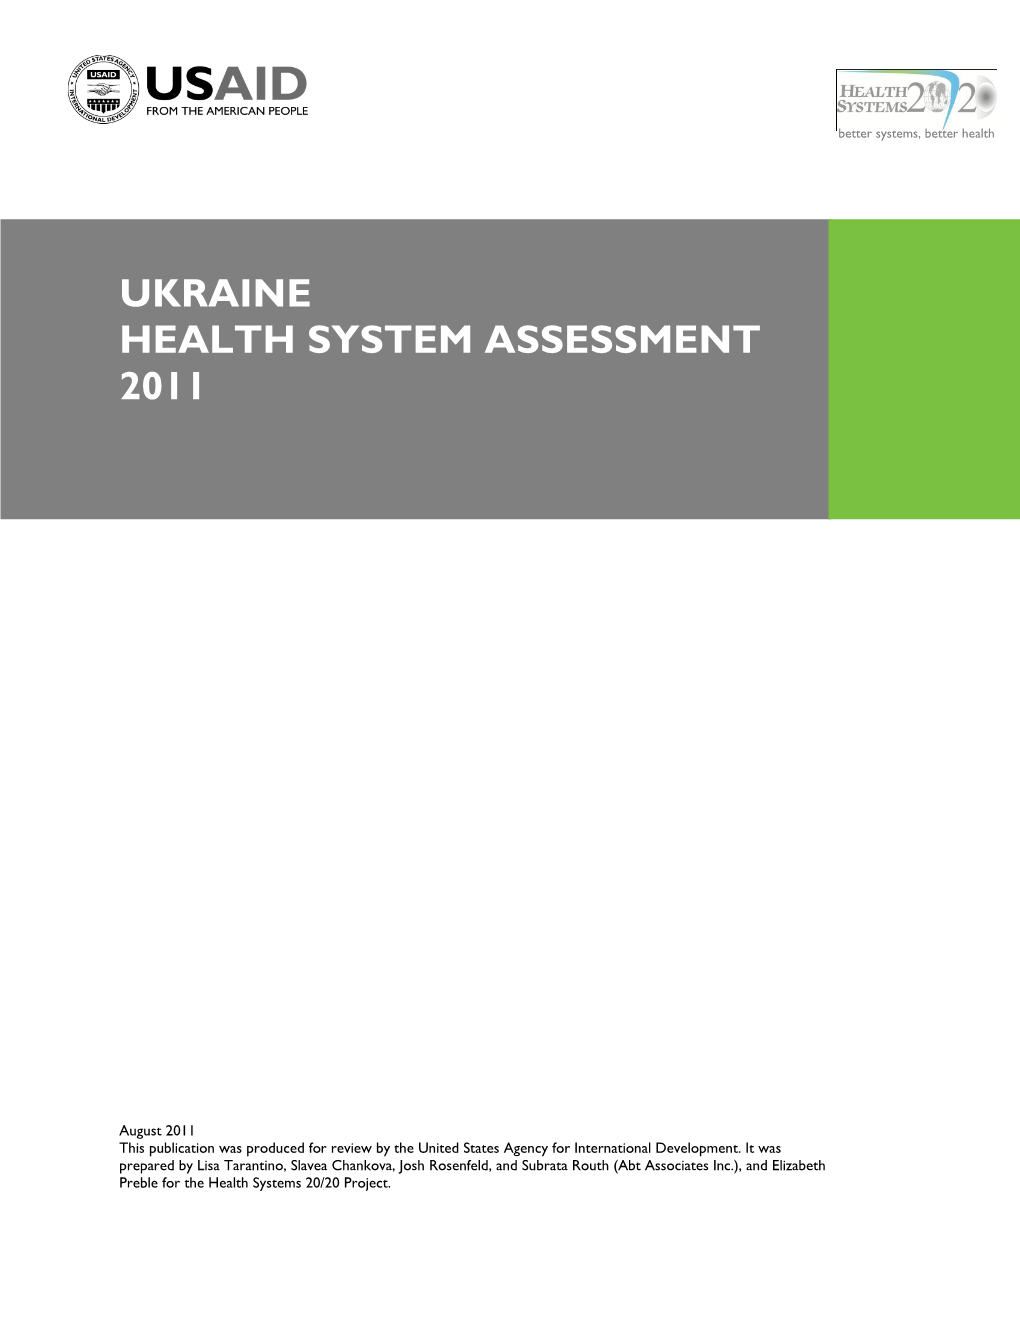 Ukraine Health System Assessment 2011